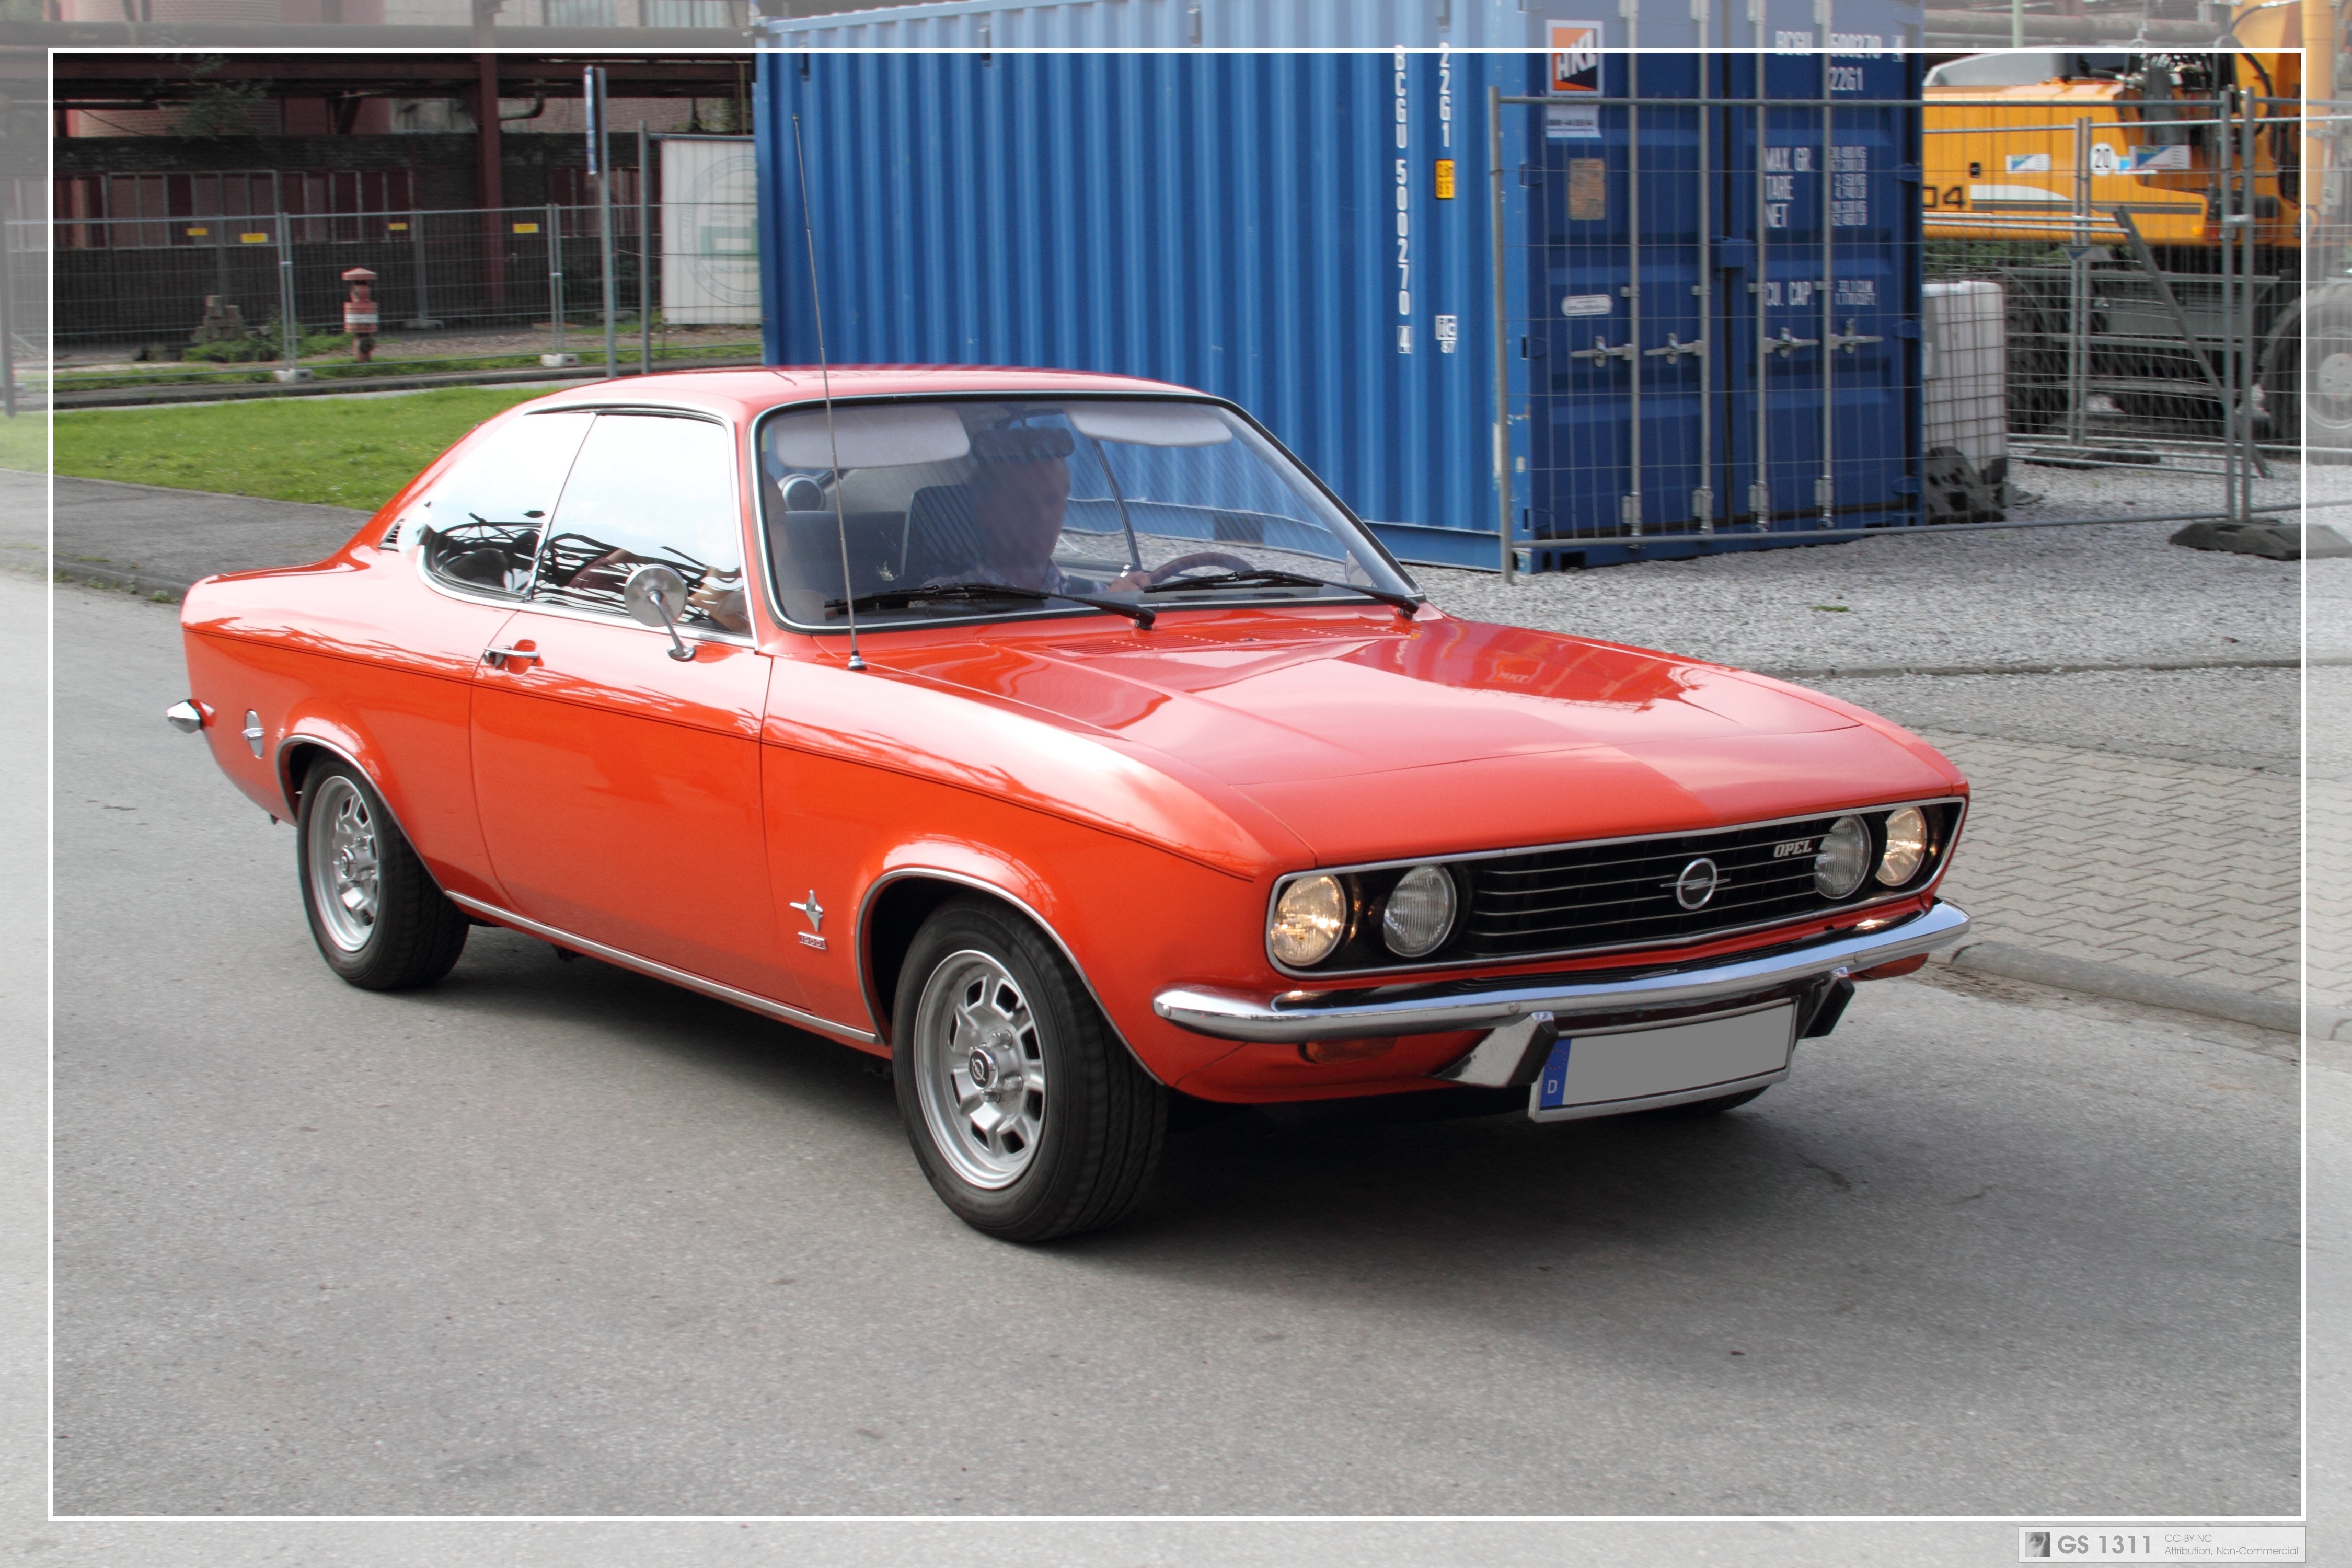 1970 - 1975 Opel Manta A (02) / Flickr - Partage de photos!